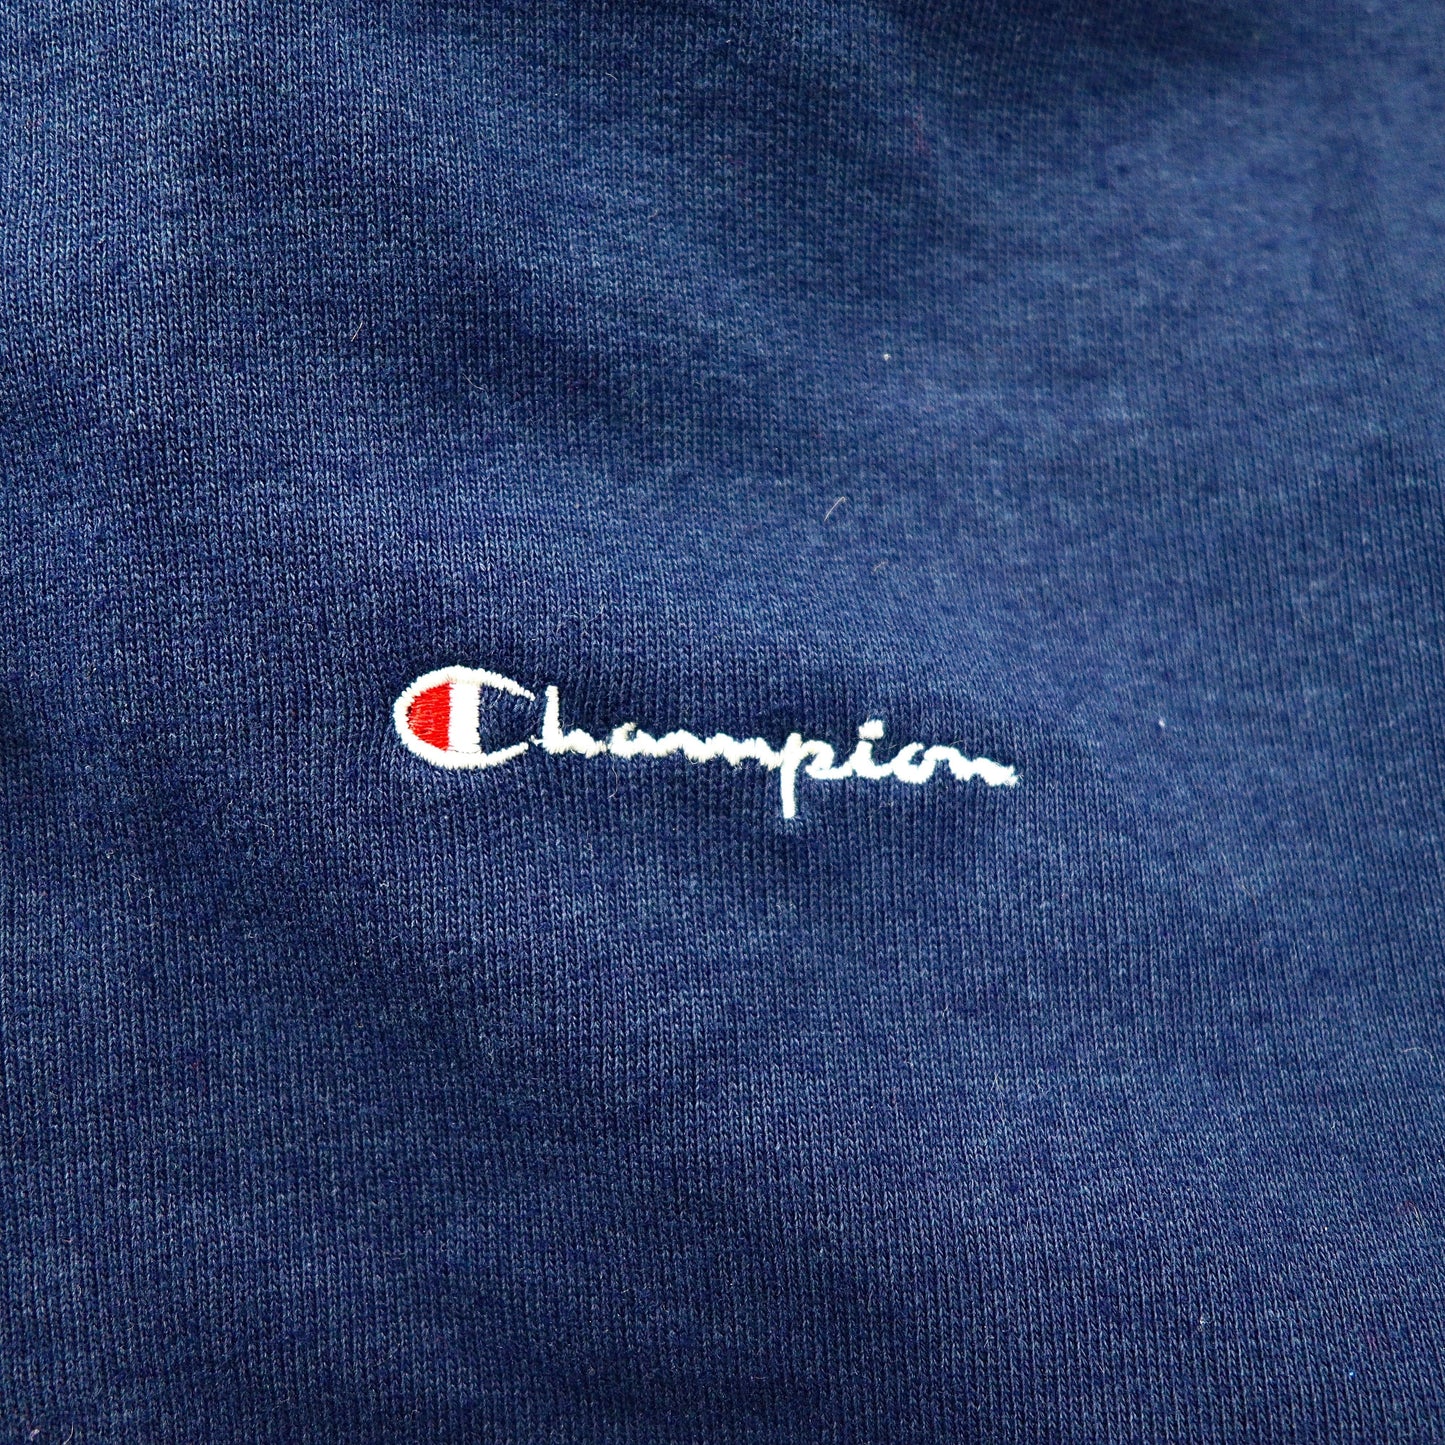 Champion ジップアップパーカー M ネイビー コットン 裏起毛 ロゴ刺繍 イタリア製